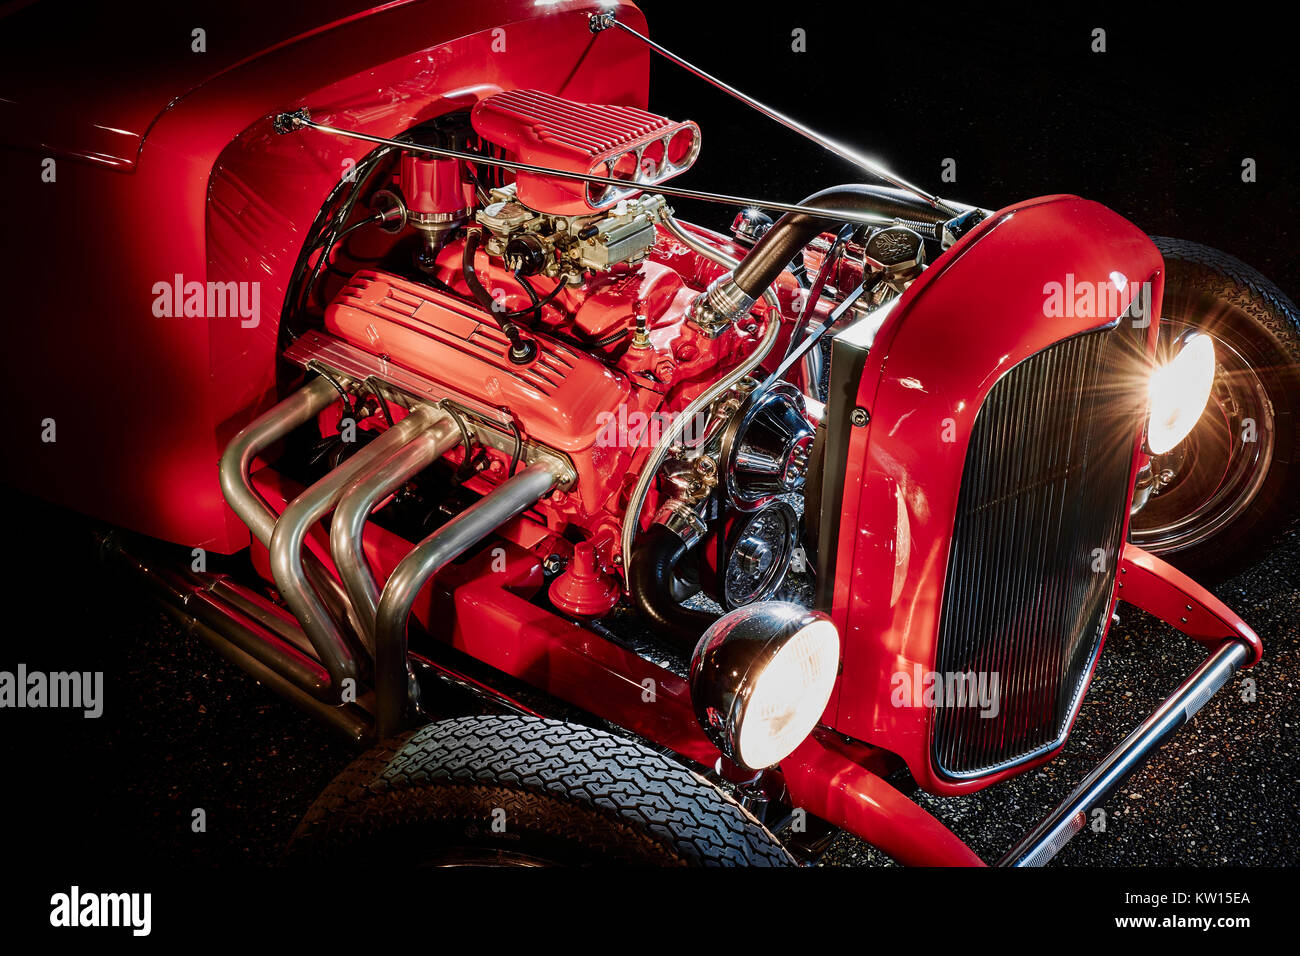 Auf Schwarz, Rot Ford Hot Rod Engine zeigt die Details der Kopfzeilen, Rohre und vier Zylinder Vergaser isoliert, in der Nacht mit Licht malen erschossen. Stockfoto